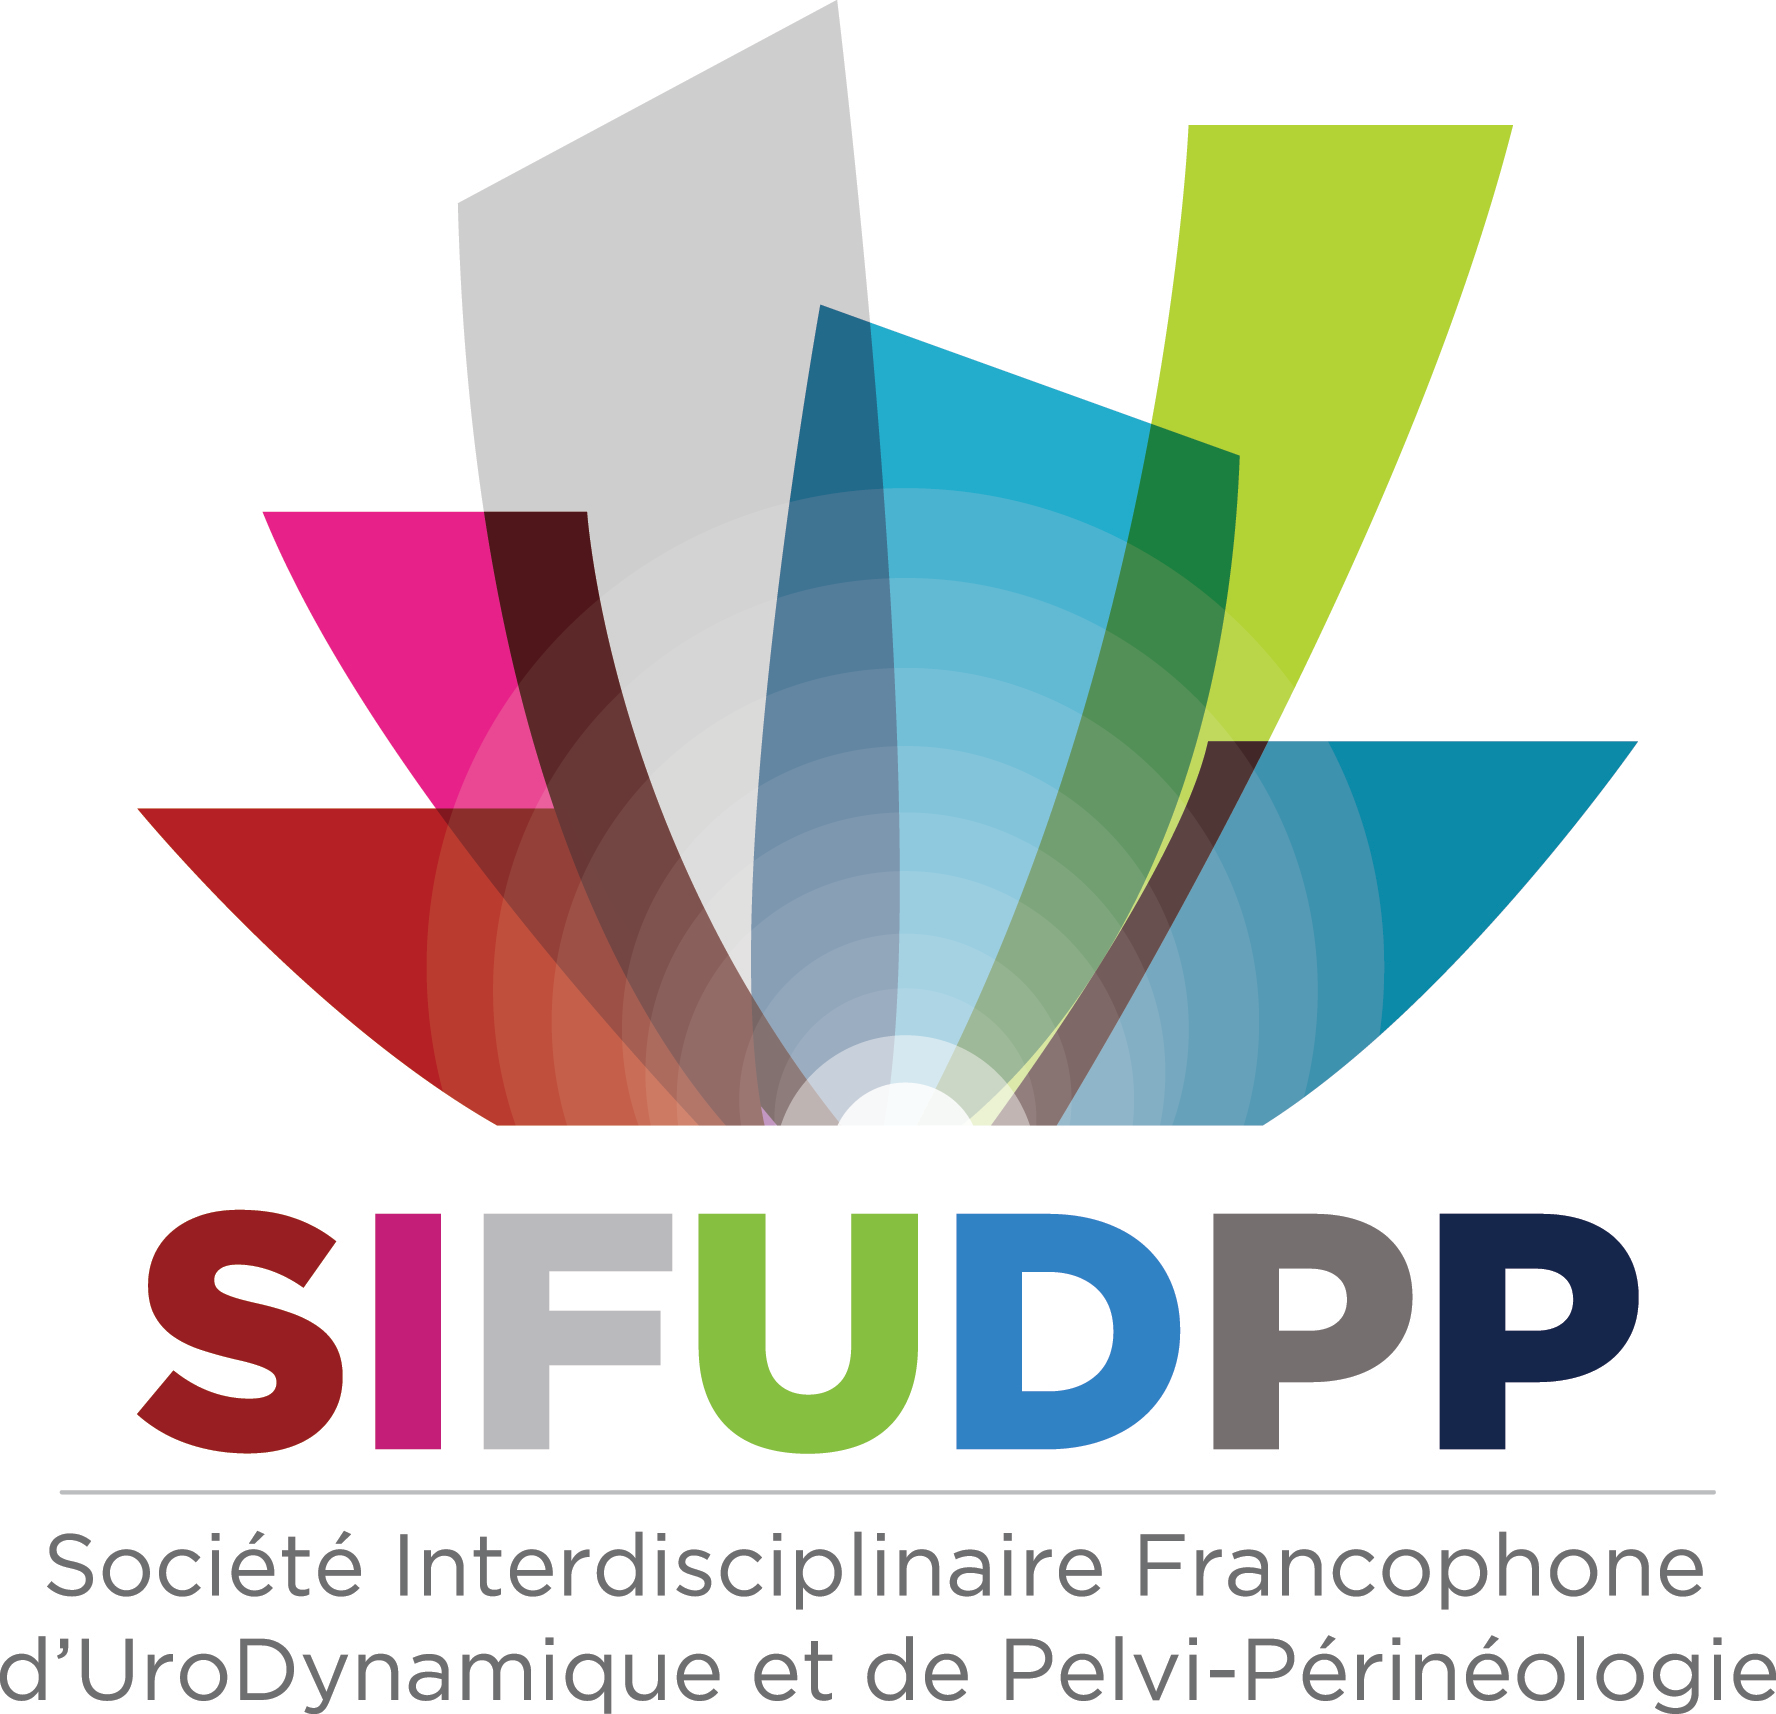 SIFUD-PP Paris 2016 : Trouble de la statique pelvienne chez l’obèse